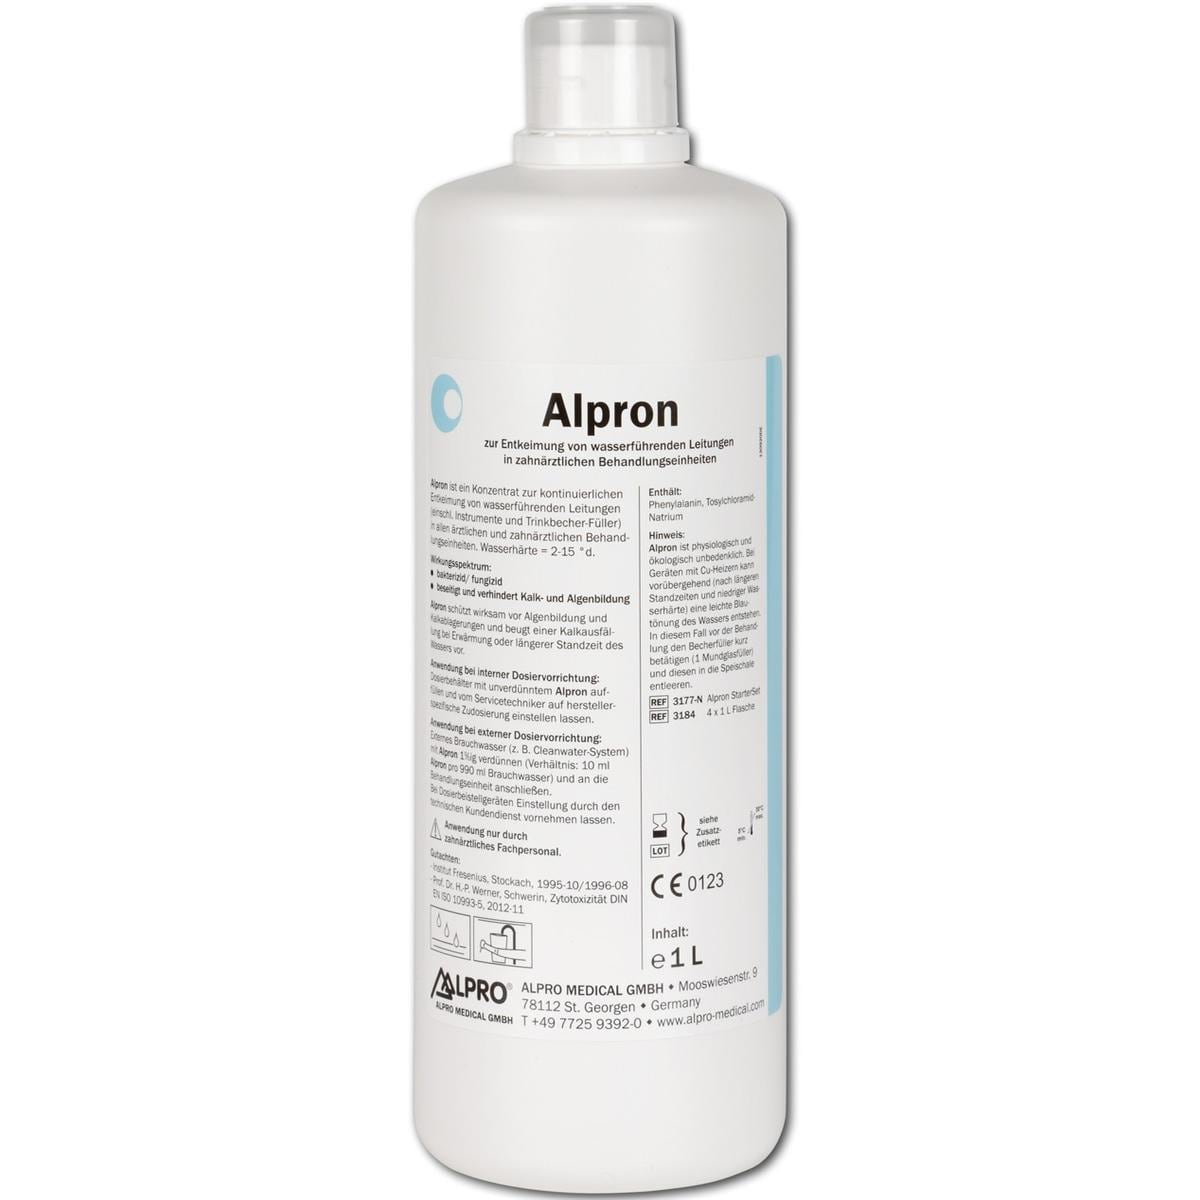 Alpron - Liquide, 4x 1 litre